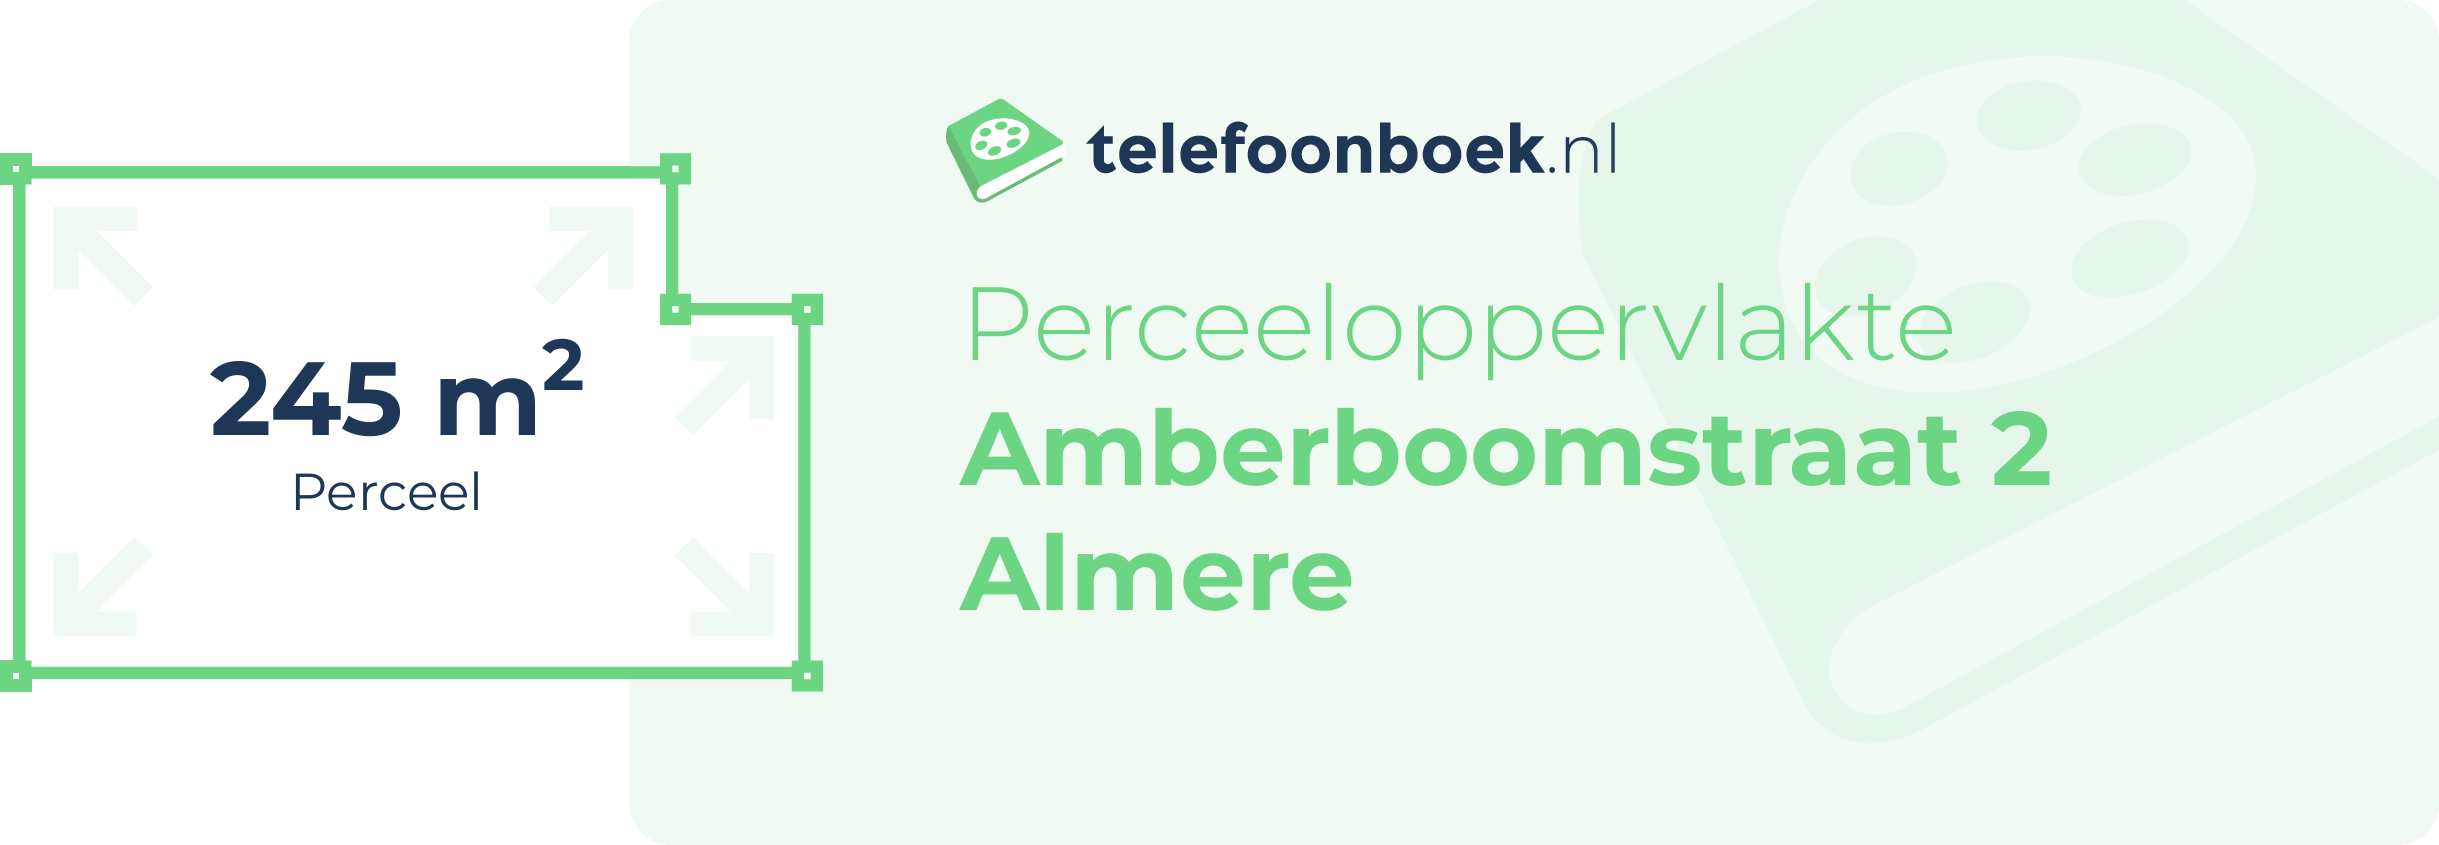 Perceeloppervlakte Amberboomstraat 2 Almere